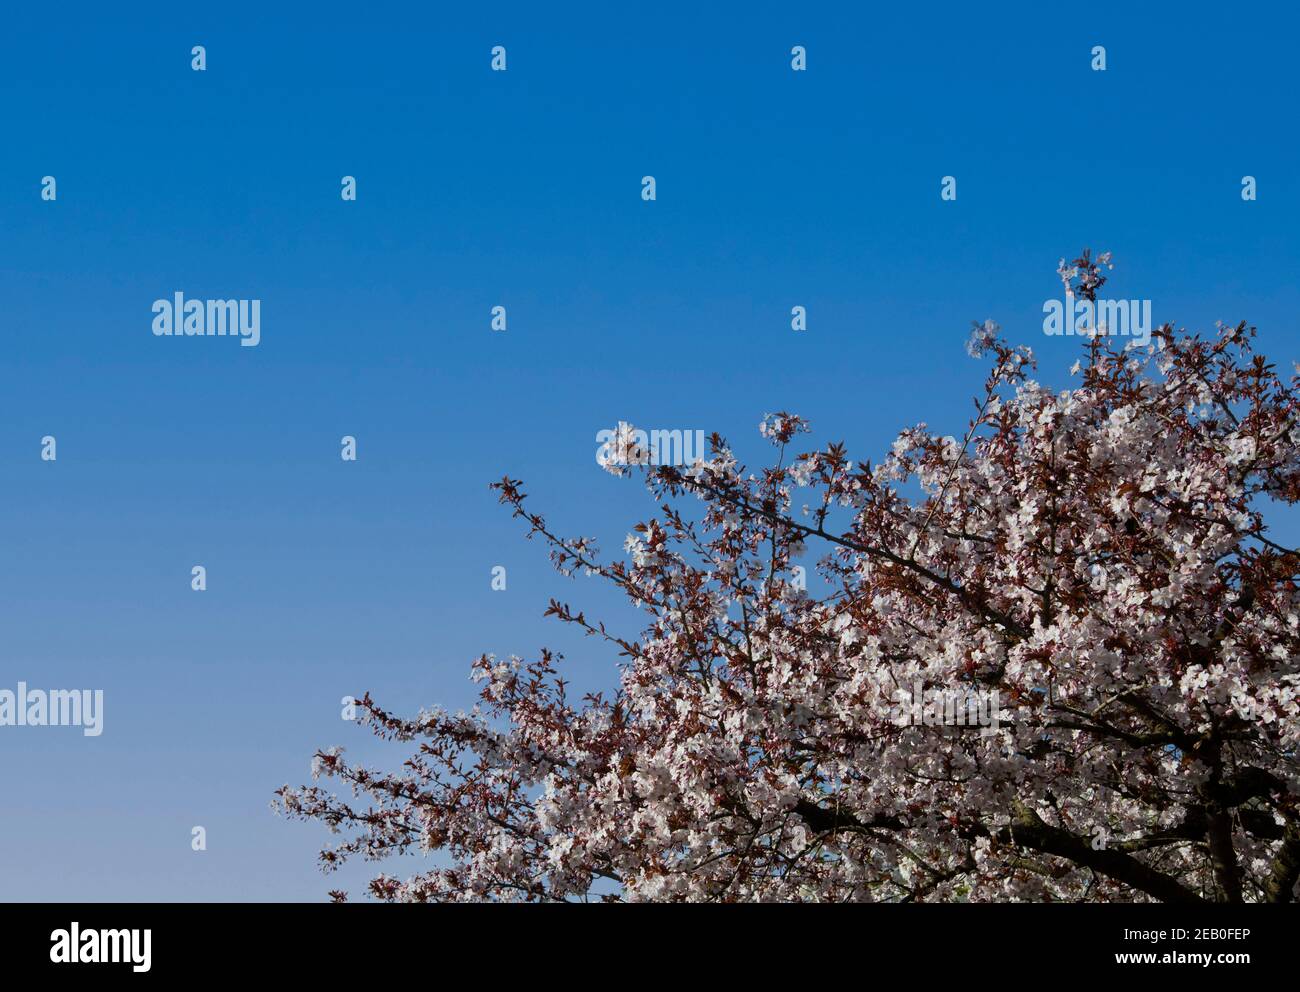 Rosafarbene Kirschblüte des Prunus 'Taoyame' in Blüte auf Baum in der unteren rechten Ecke, gegen wolkenlosen blauen Himmel - von dunkel bis hellblau verblassend Stockfoto